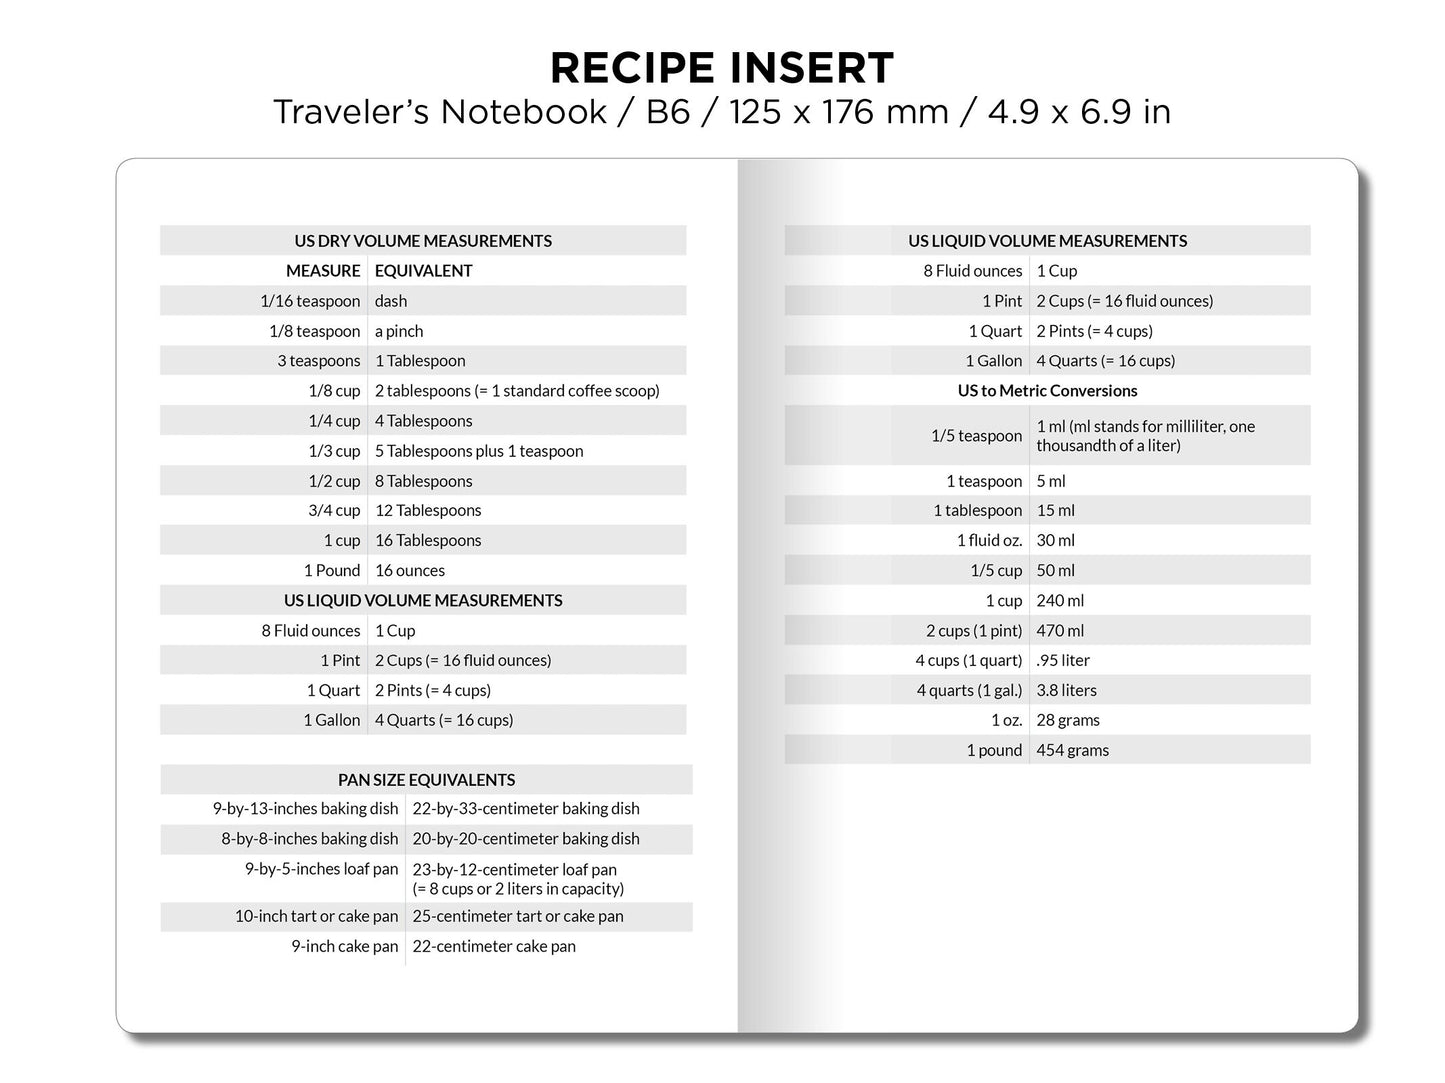 TN B6 Recipe Insert for Traveler's Notebook Printable Planner Insert